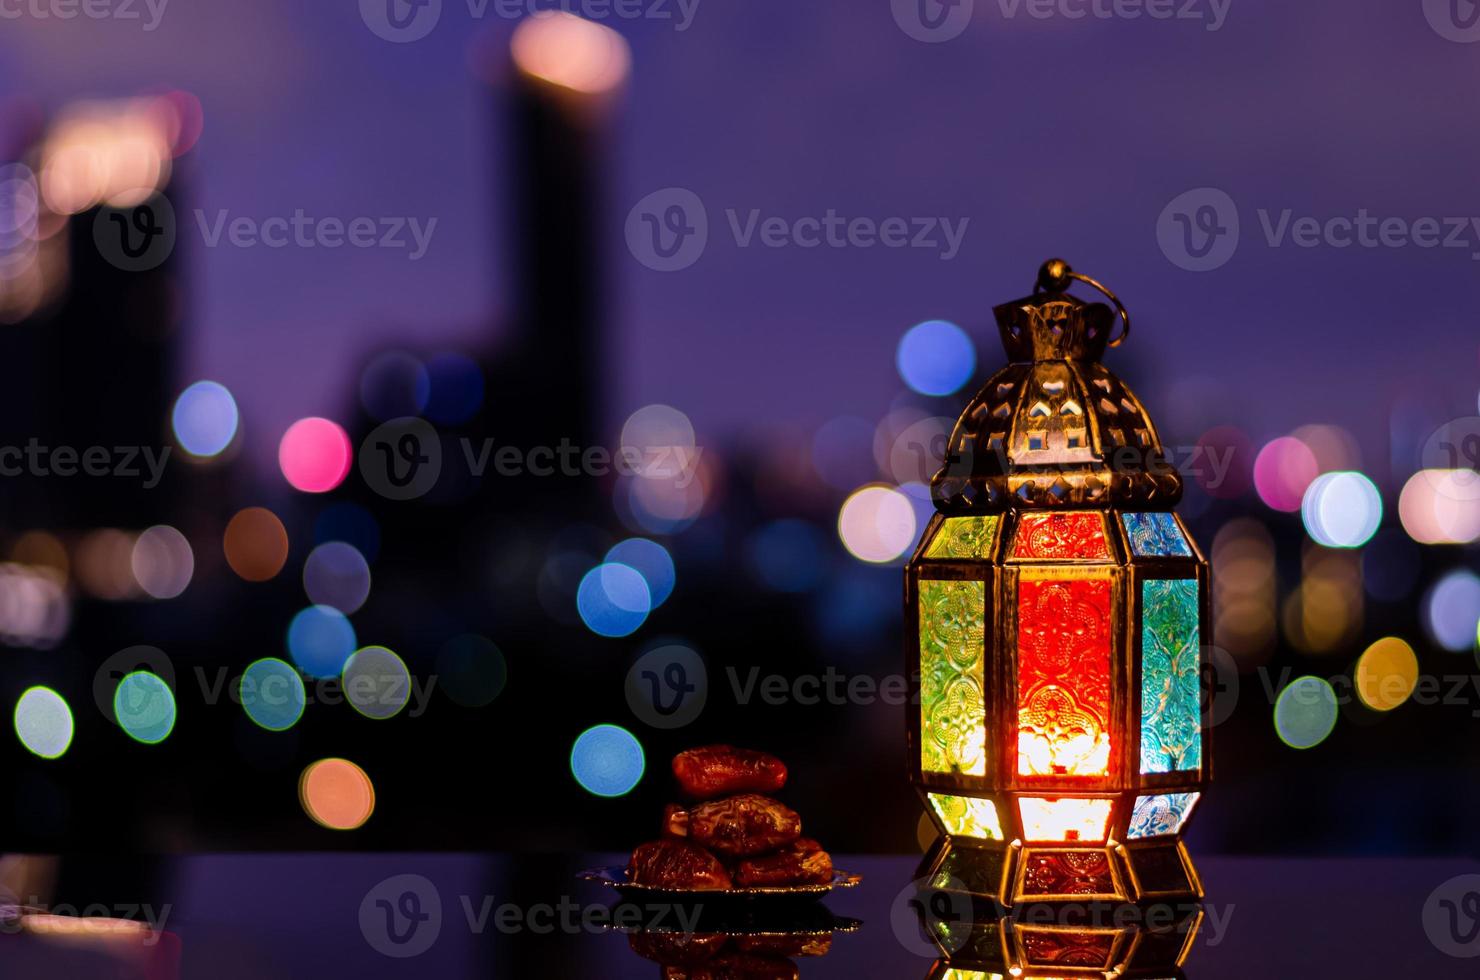 linterna y plato pequeño de dátiles con cielo nocturno y fondo claro de la ciudad para la fiesta musulmana del mes sagrado del ramadán kareem. foto